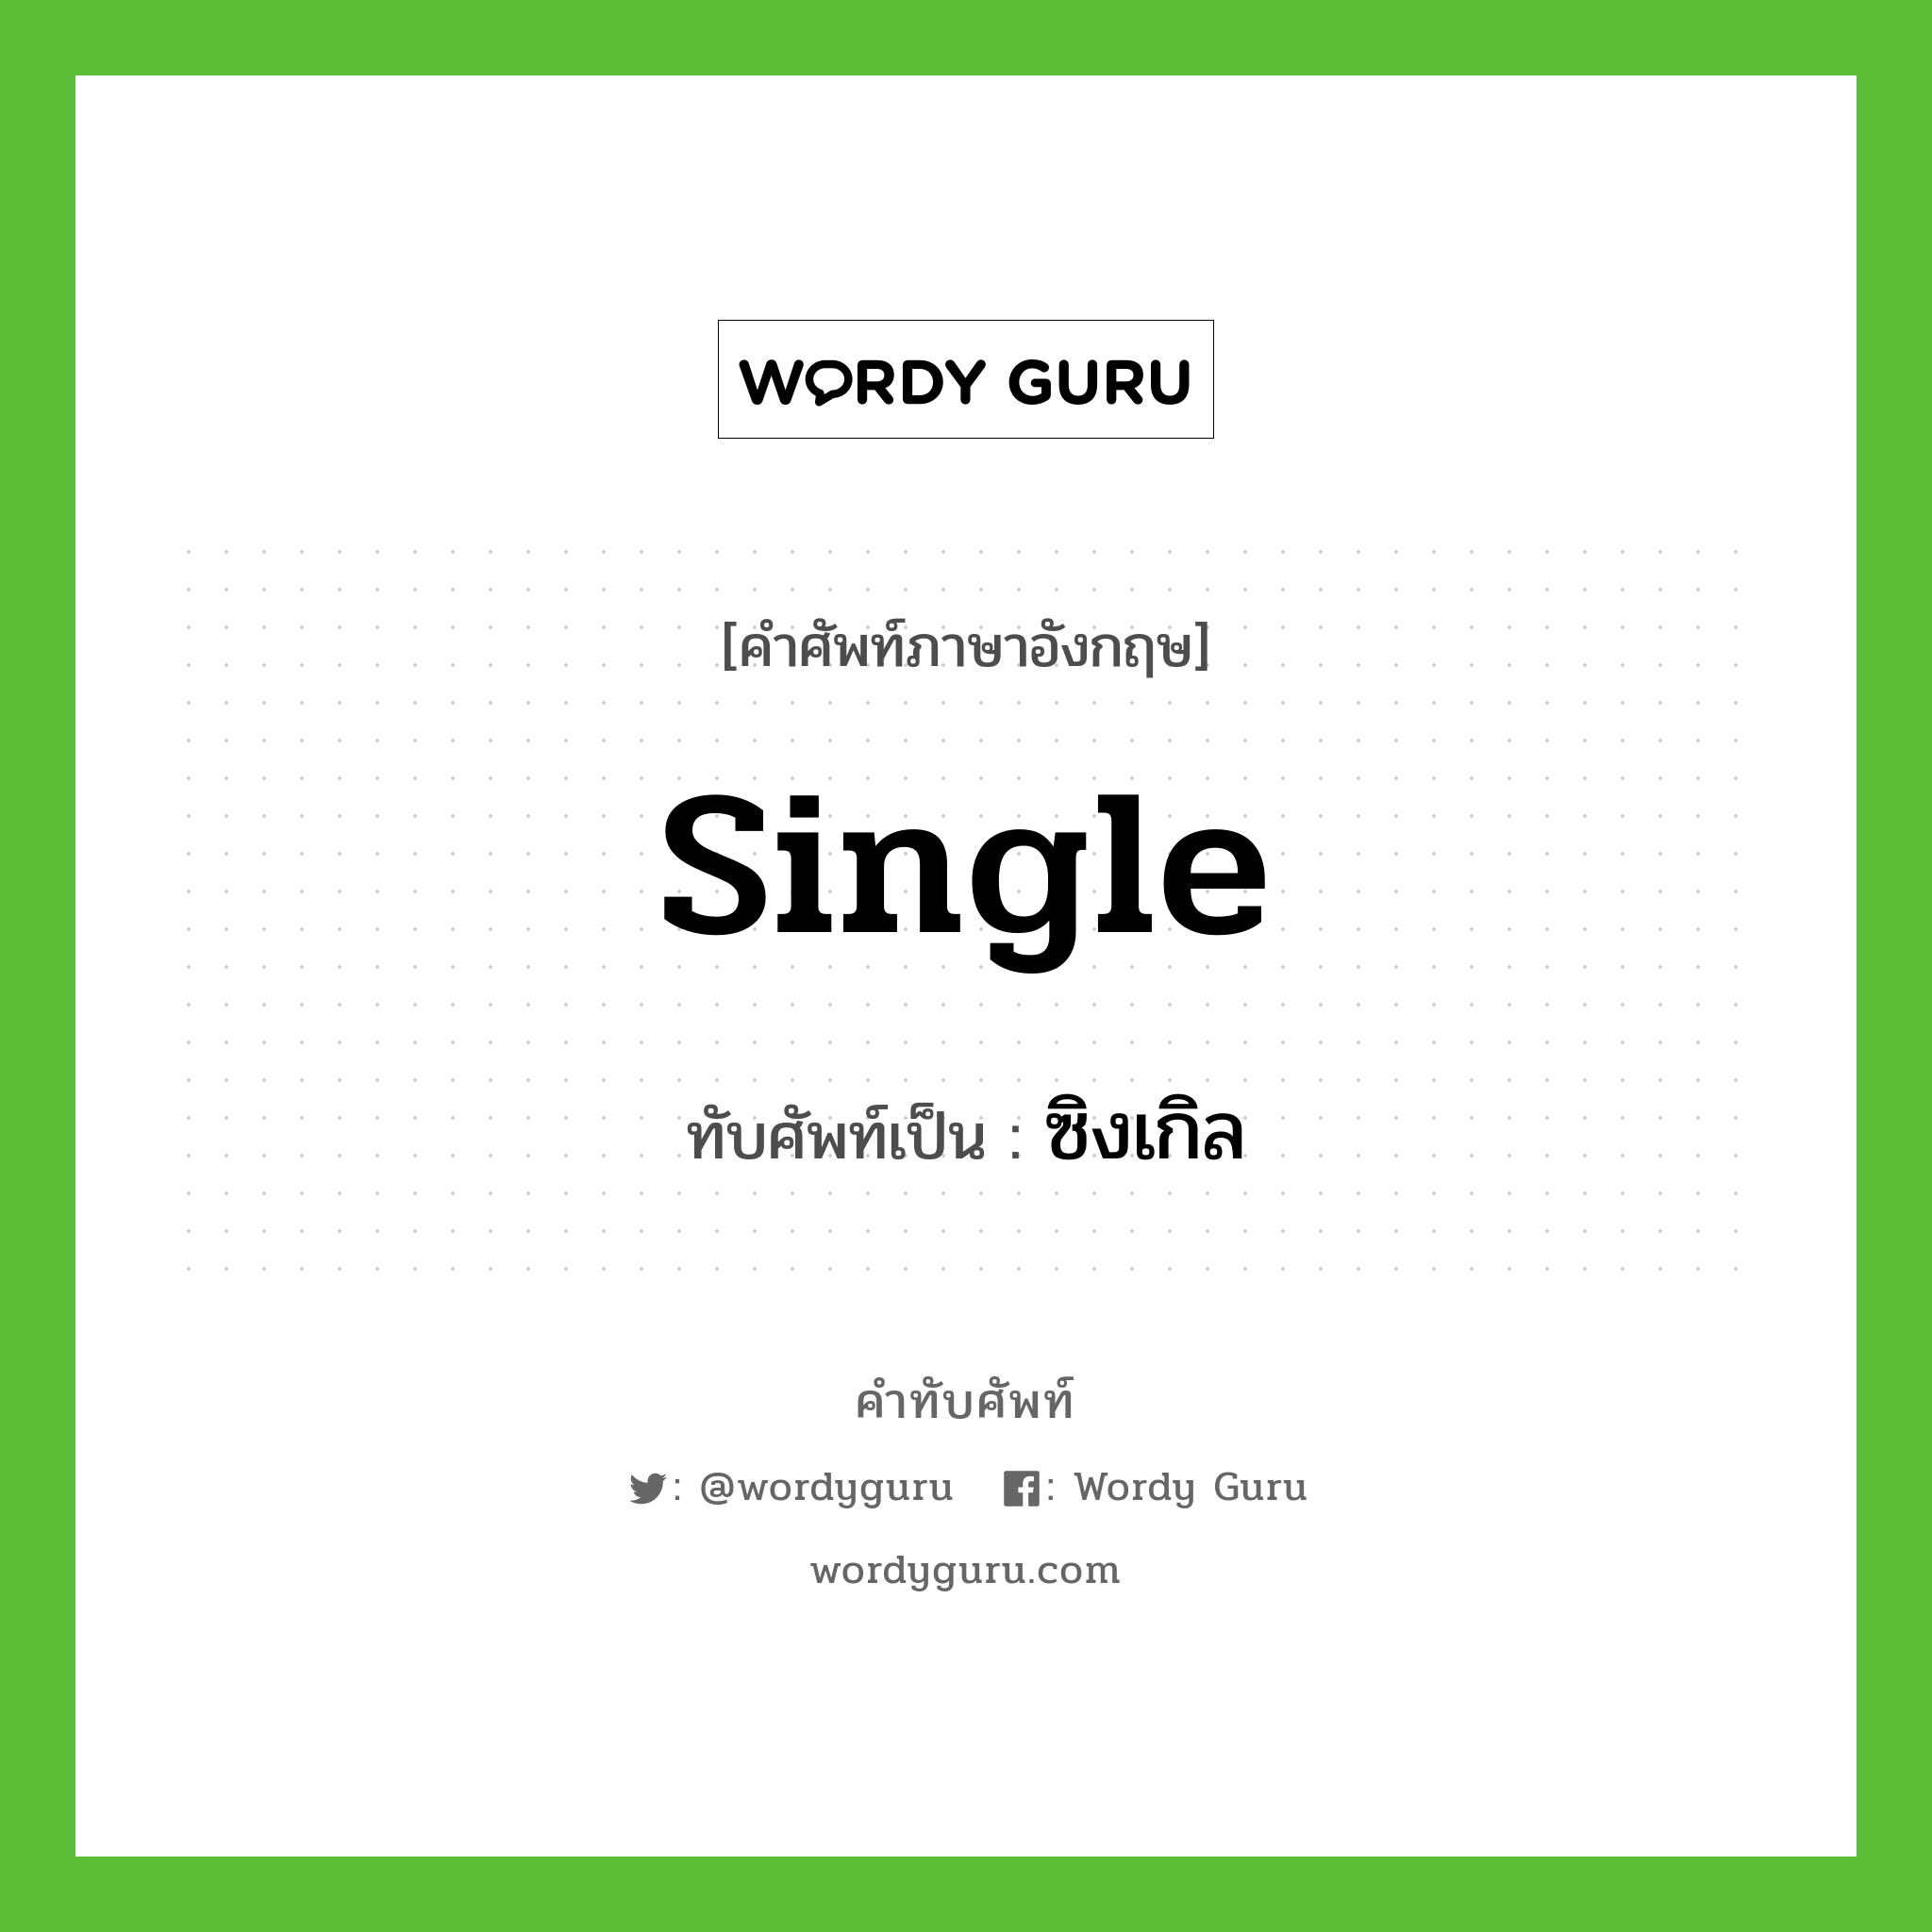 single เขียนเป็นคำไทยว่าอะไร?, คำศัพท์ภาษาอังกฤษ single ทับศัพท์เป็น ซิงเกิล